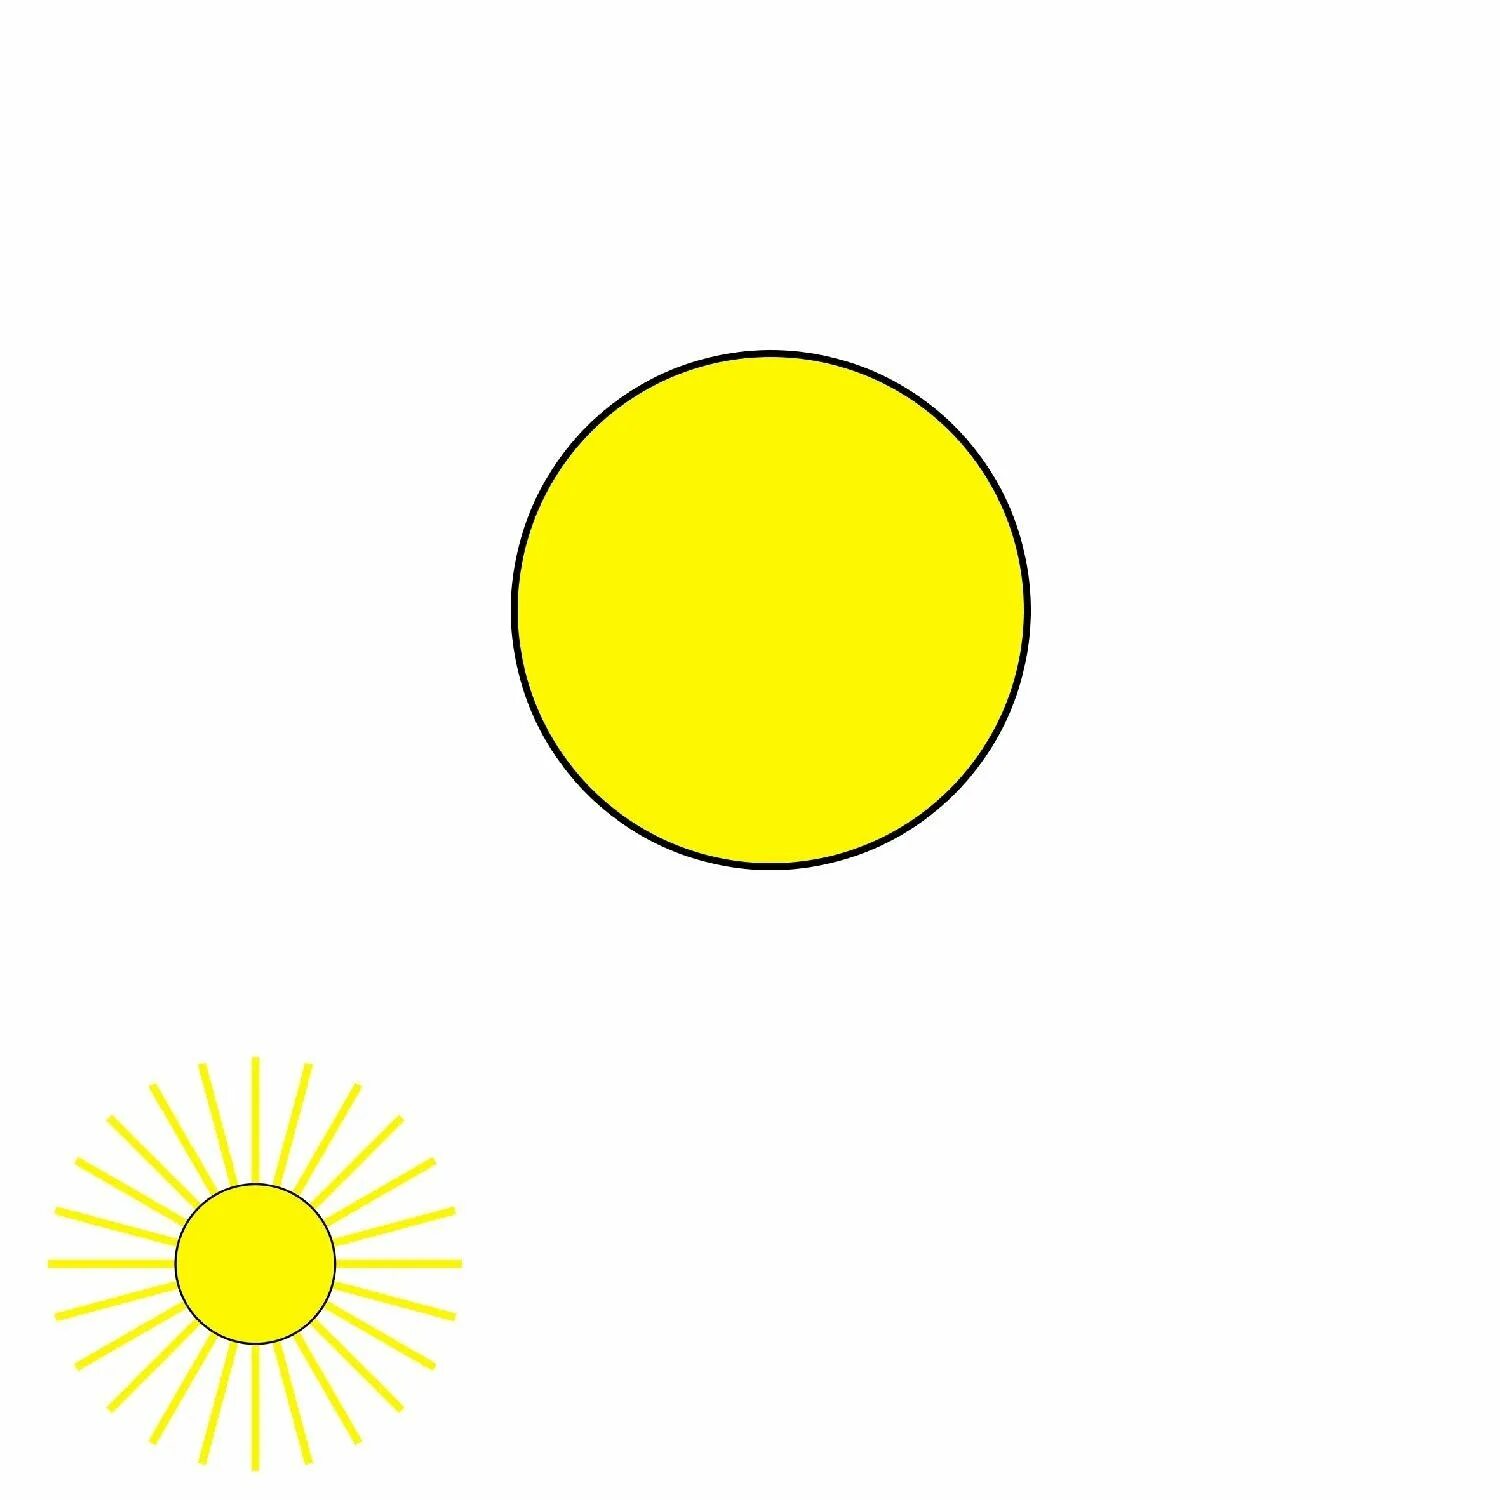 Солнышко без лучиков для детей. Желтый круг. Круг желтого цвета. Кружочки желтого цвета.